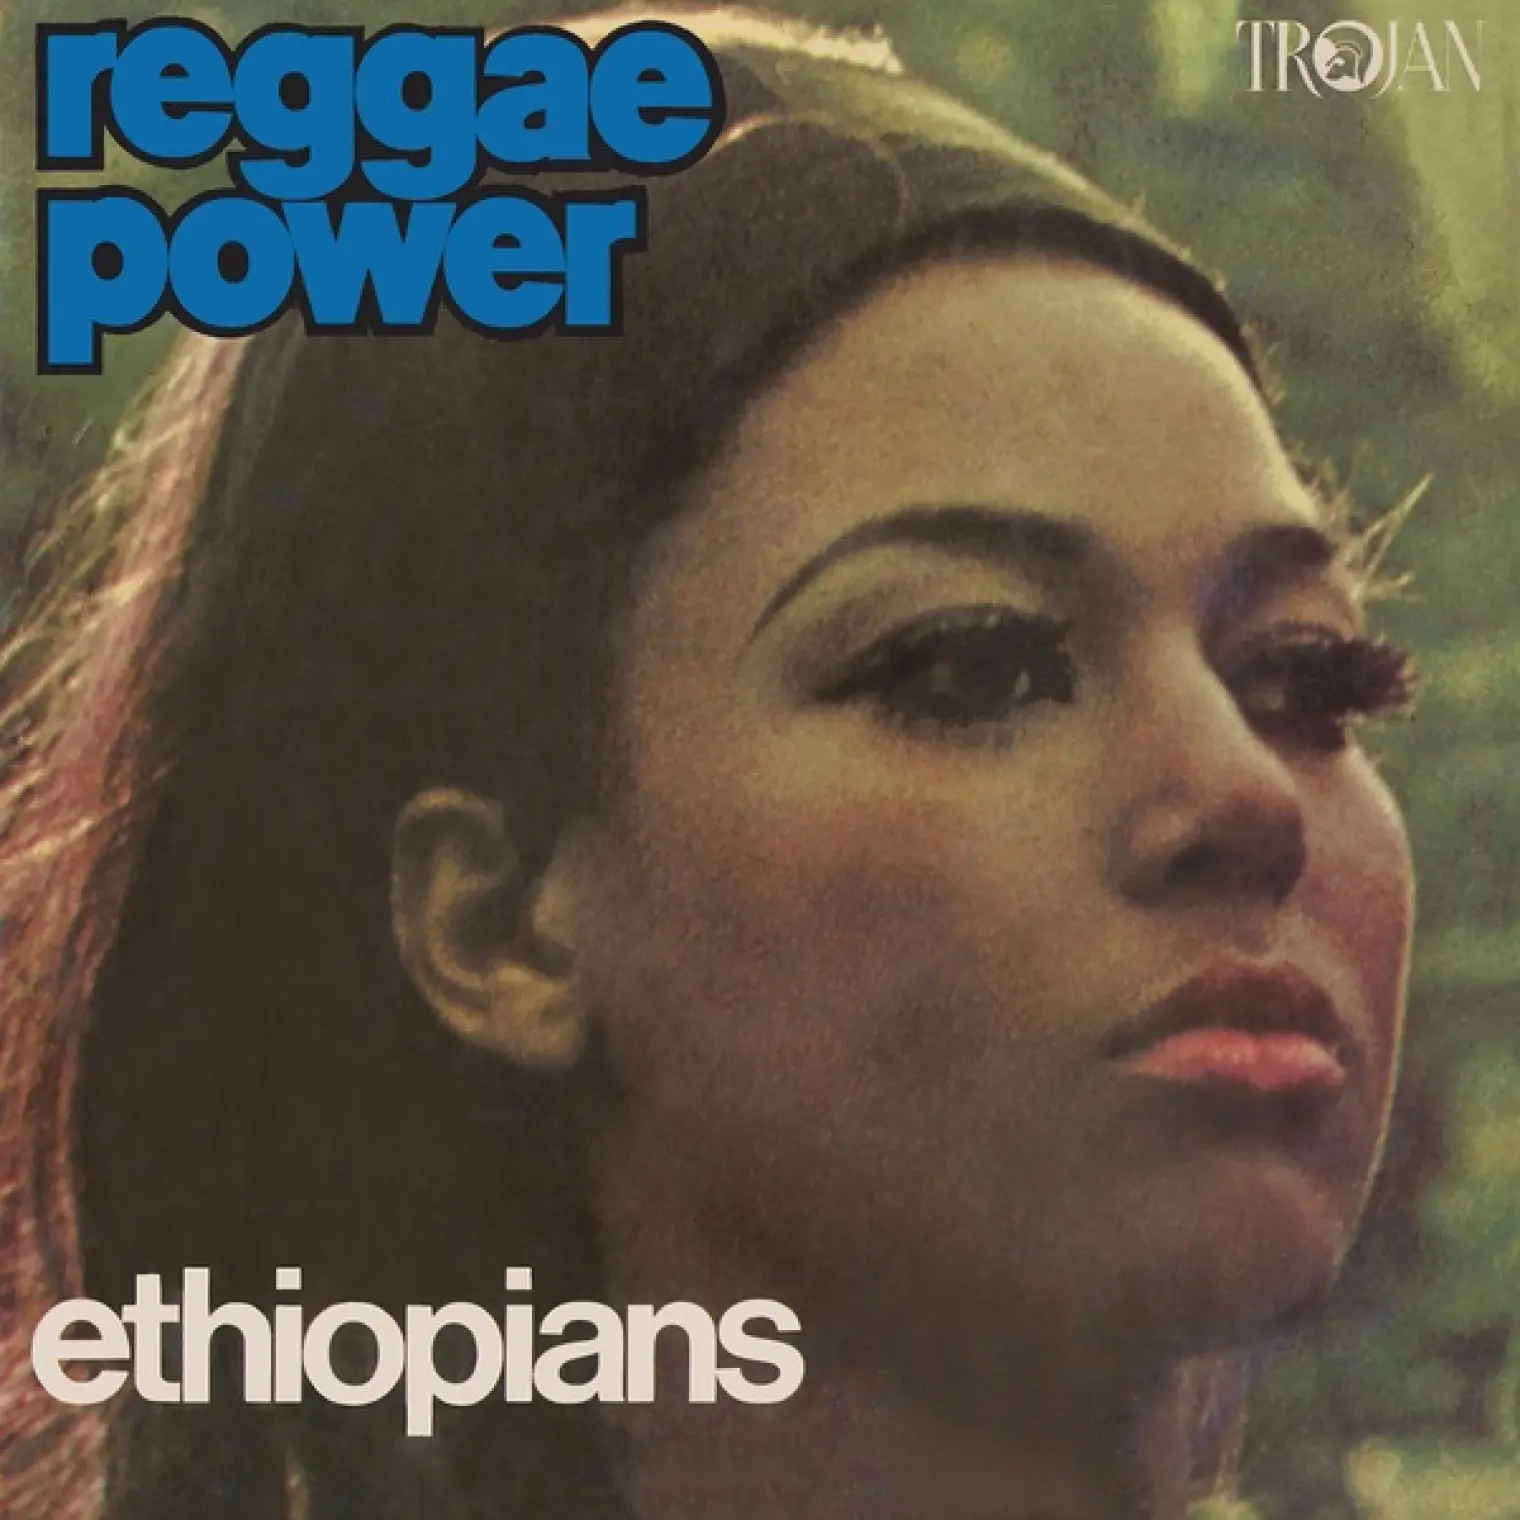 Reggae Power -  The Ethiopians 